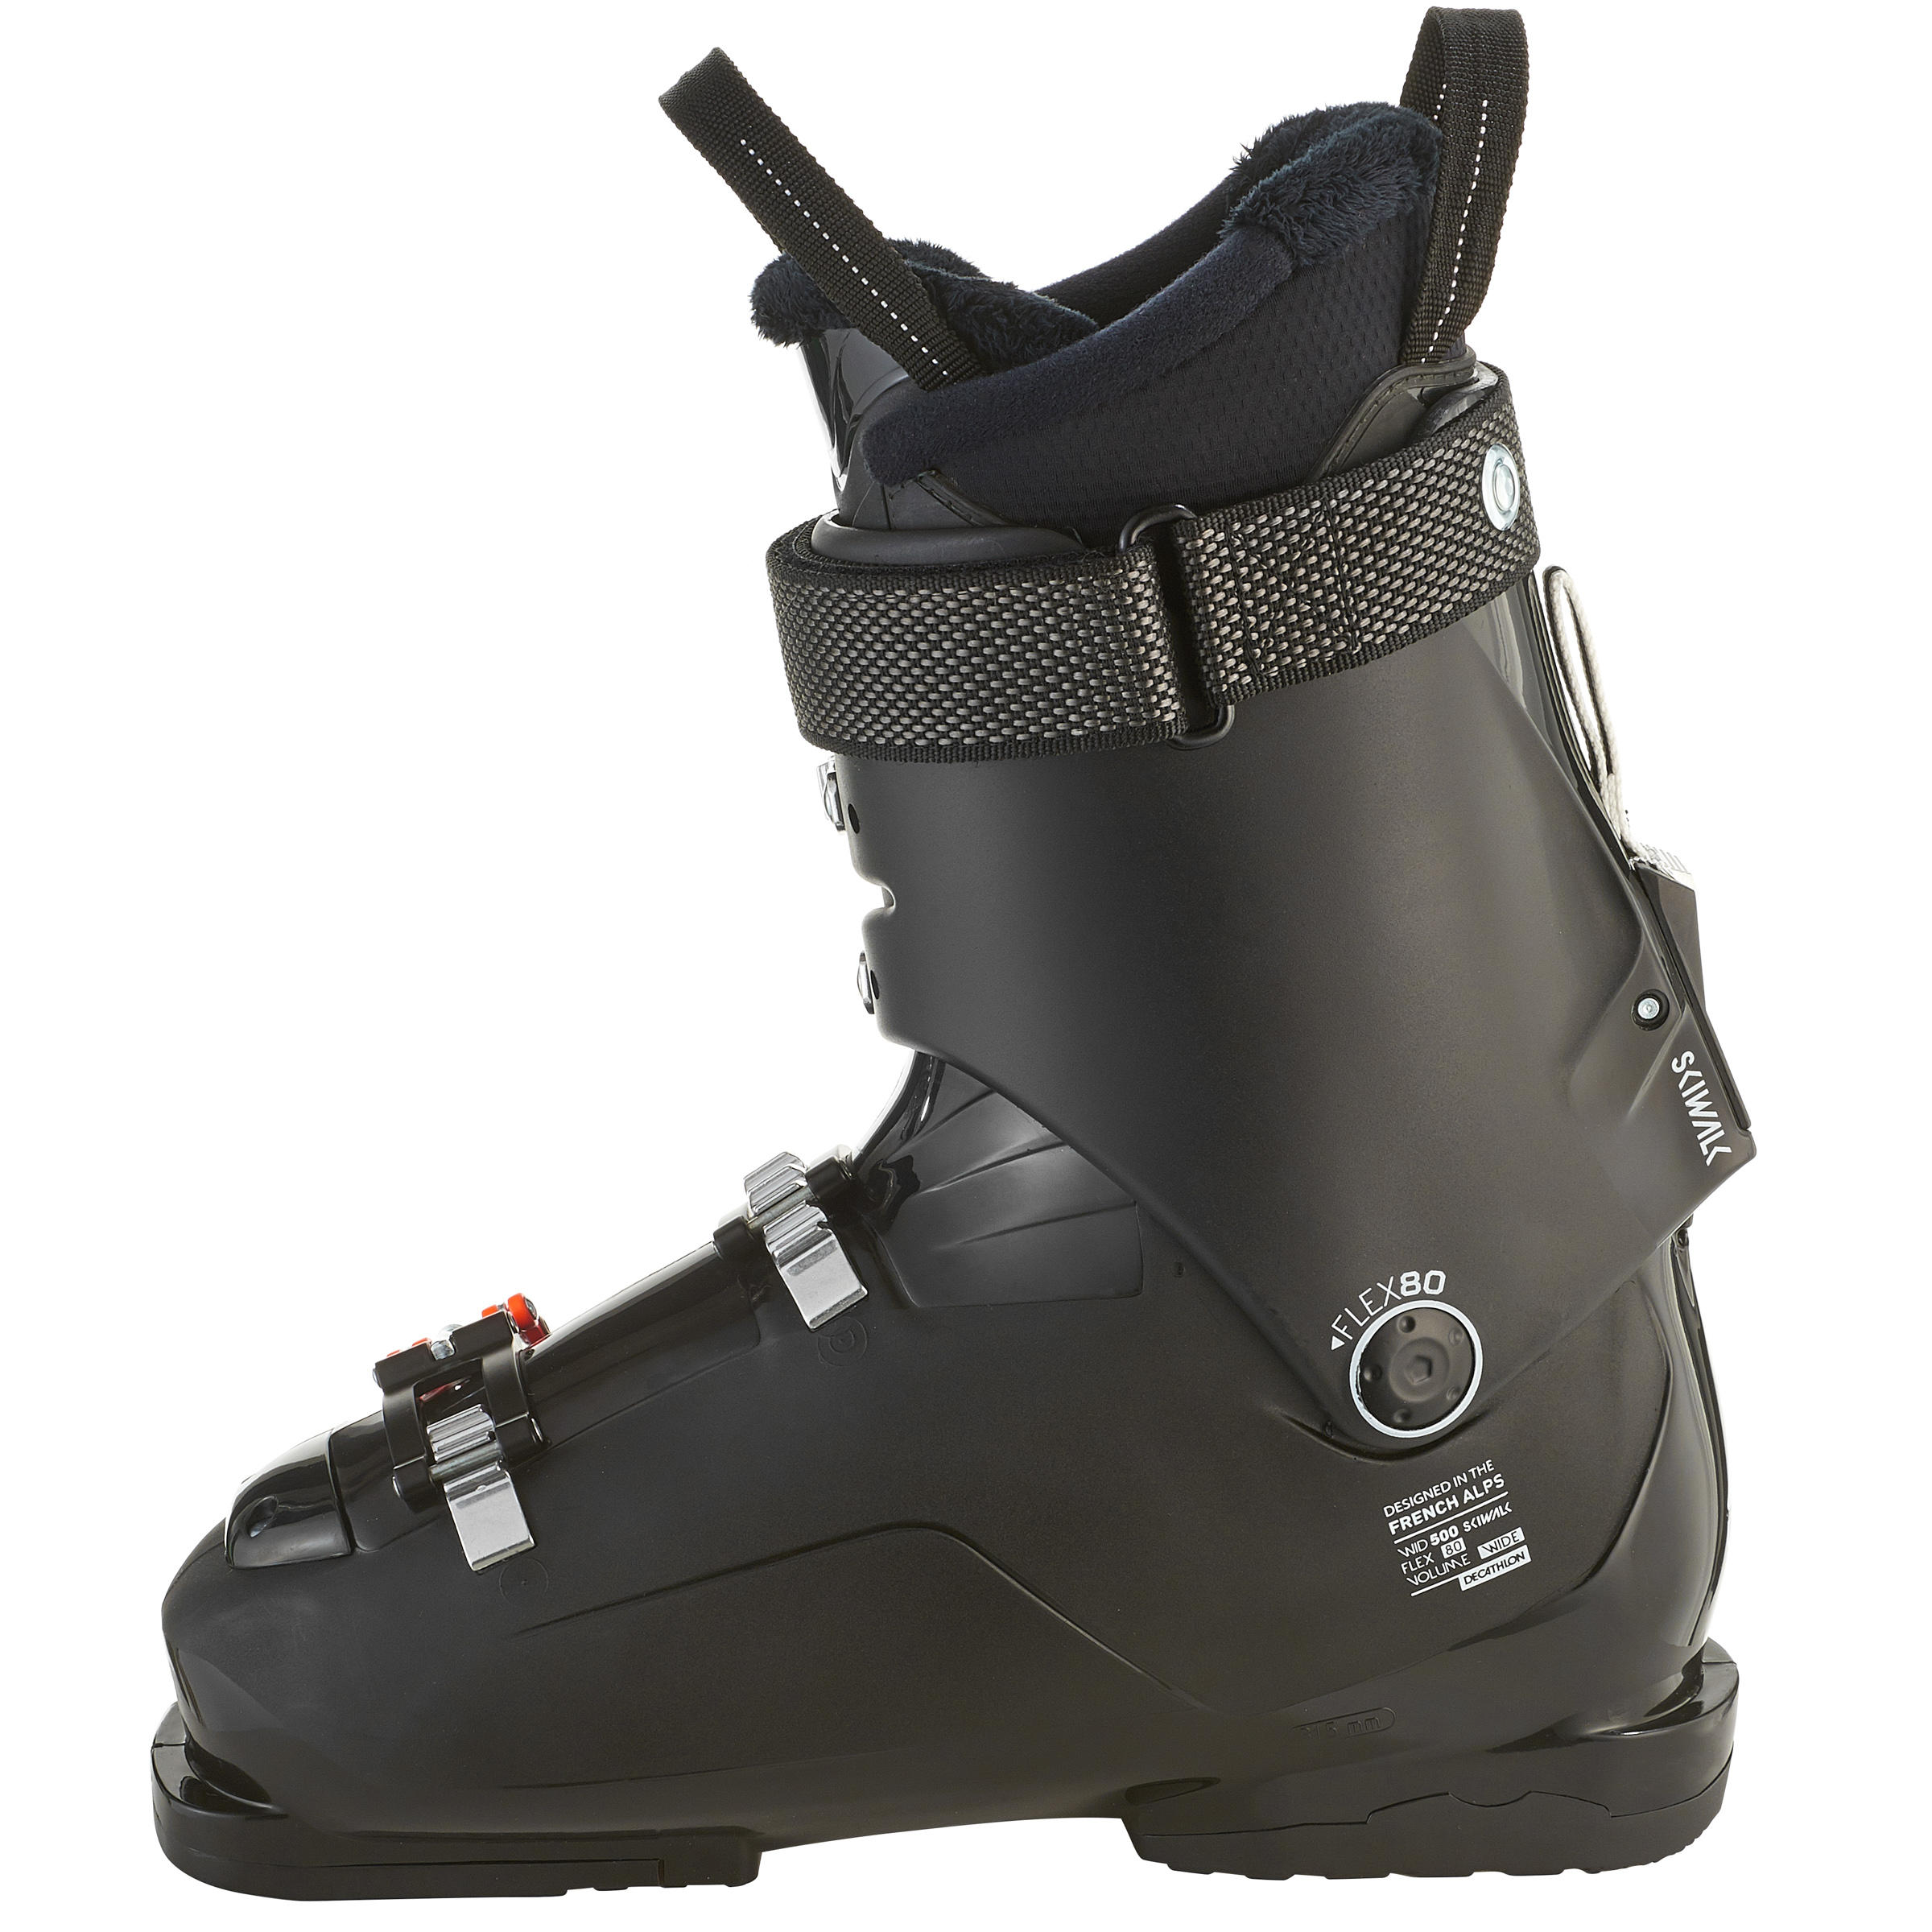 Men's Downhill Ski Boots Wid - Black 8/10